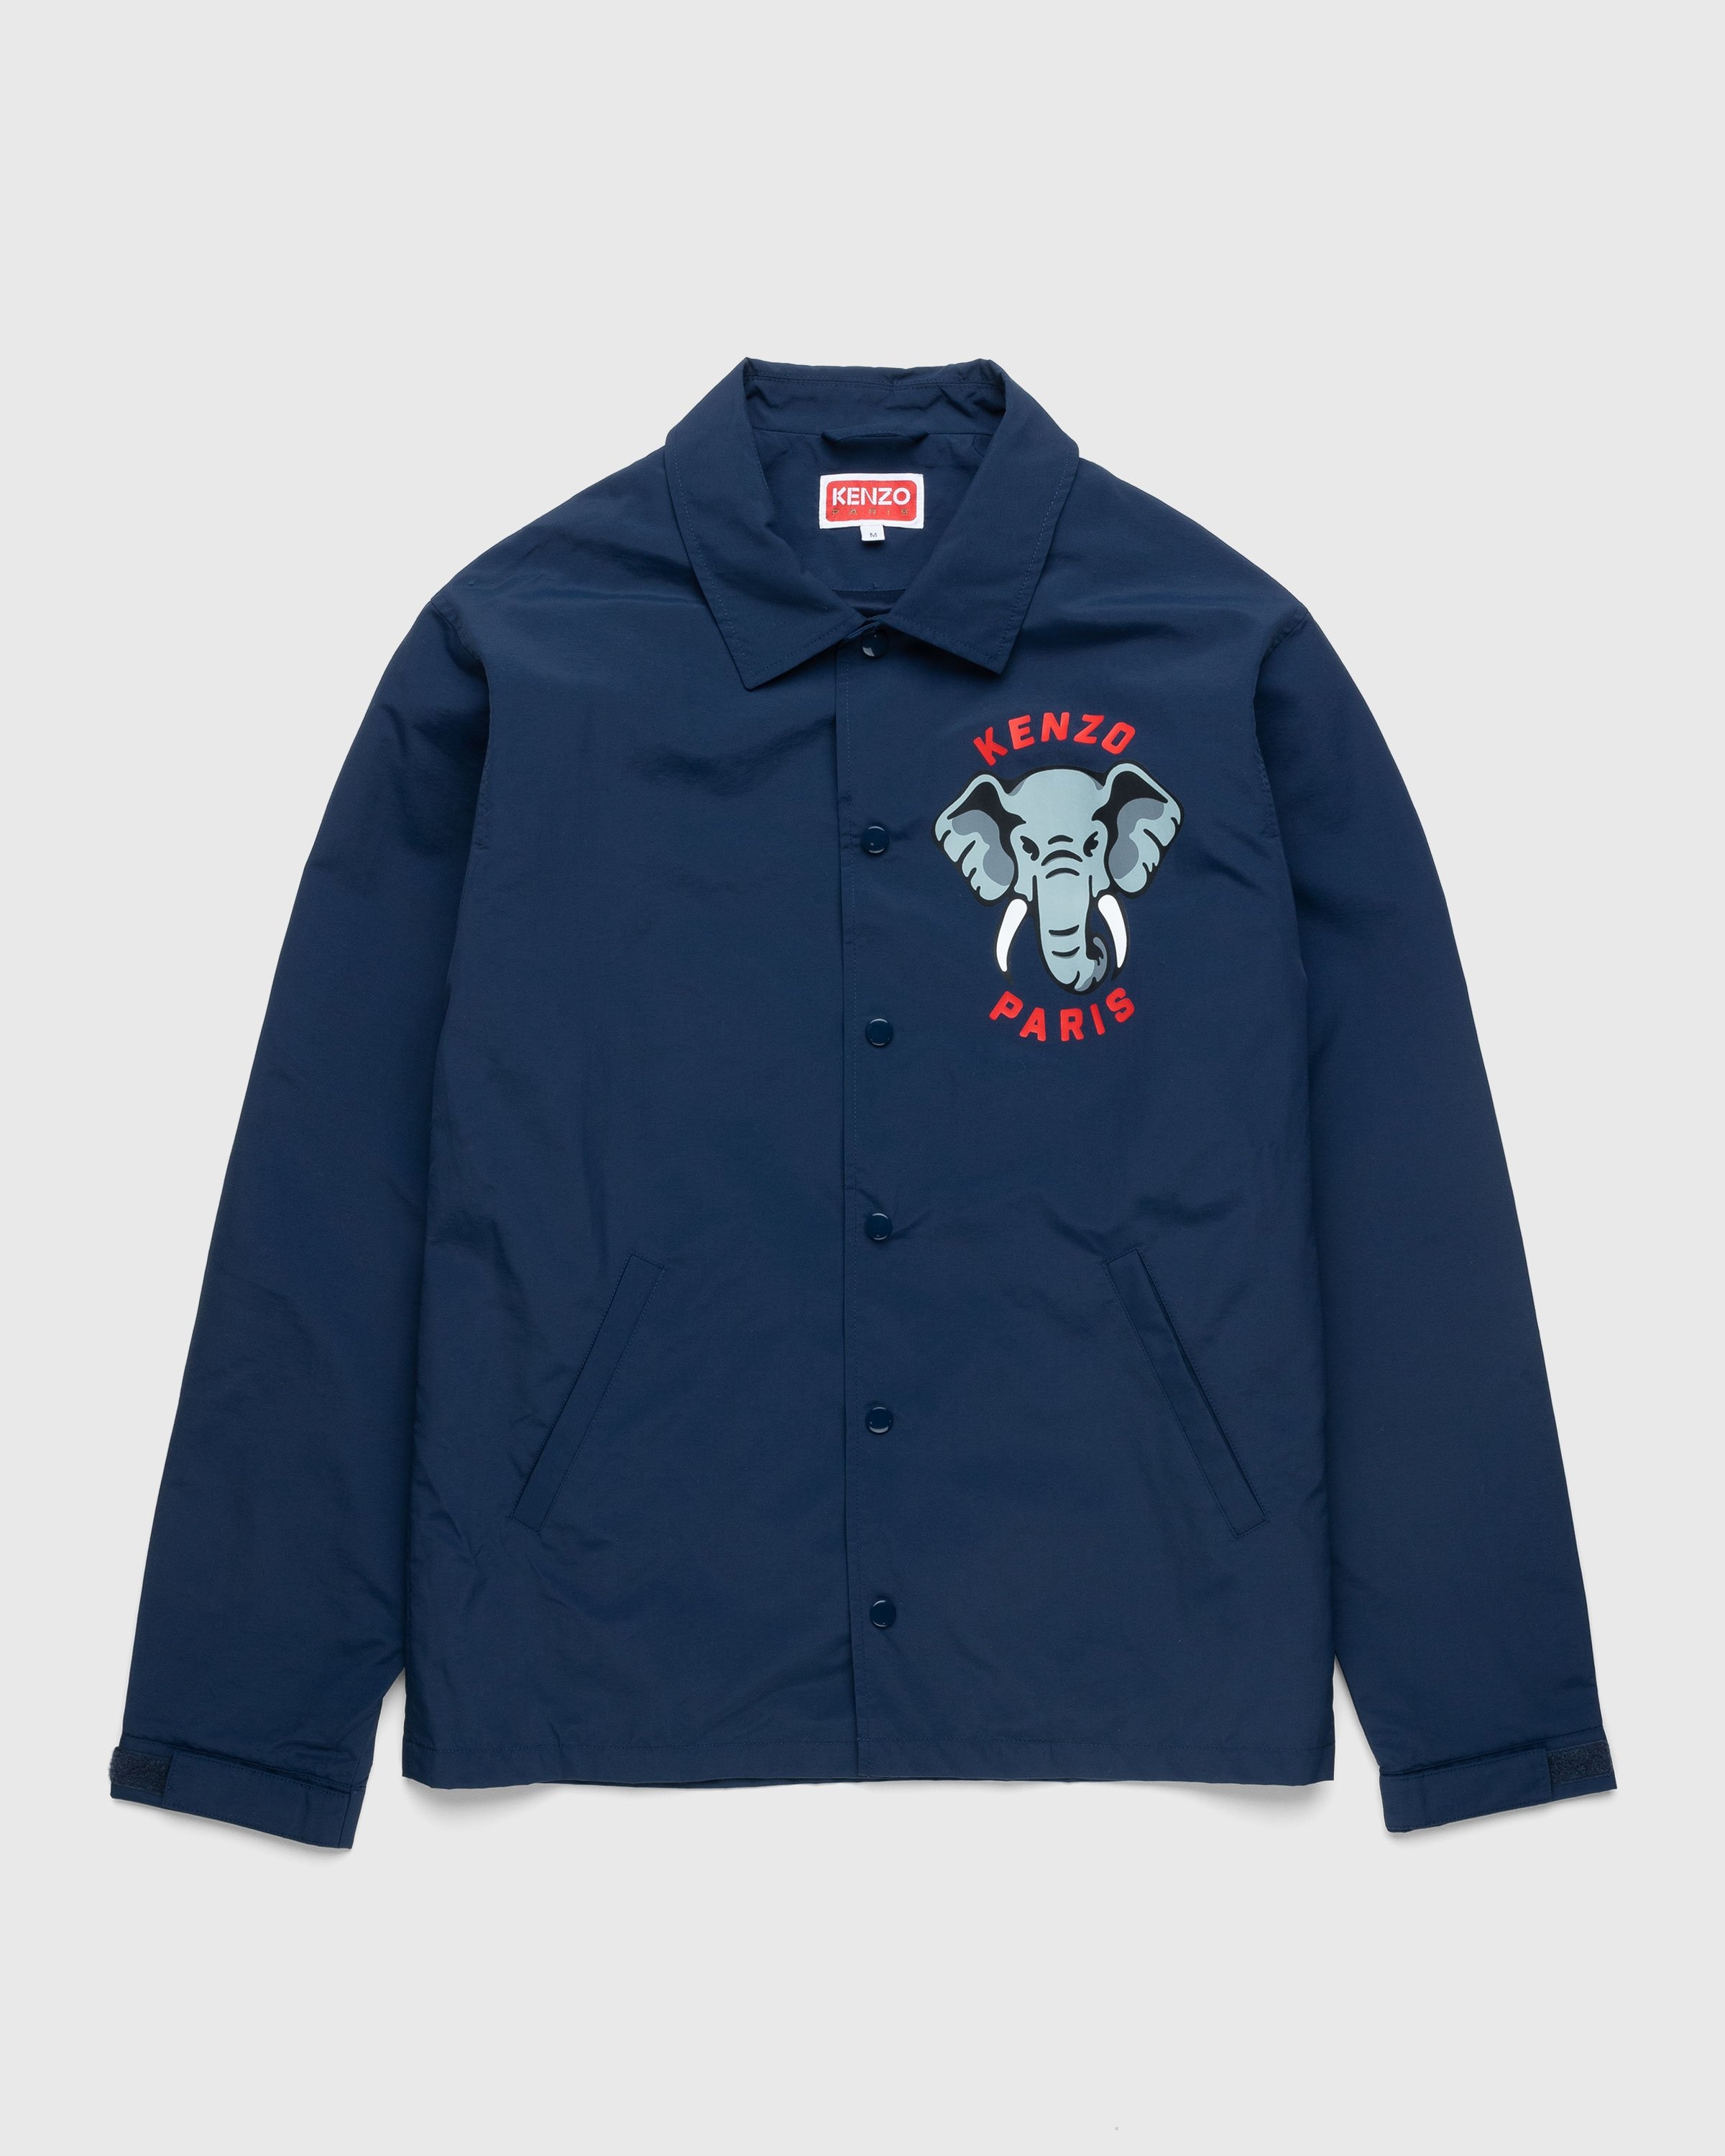 Kenzo – Elephant Coach Jacket Midnight Blue - Jackets - Blue - Image 1